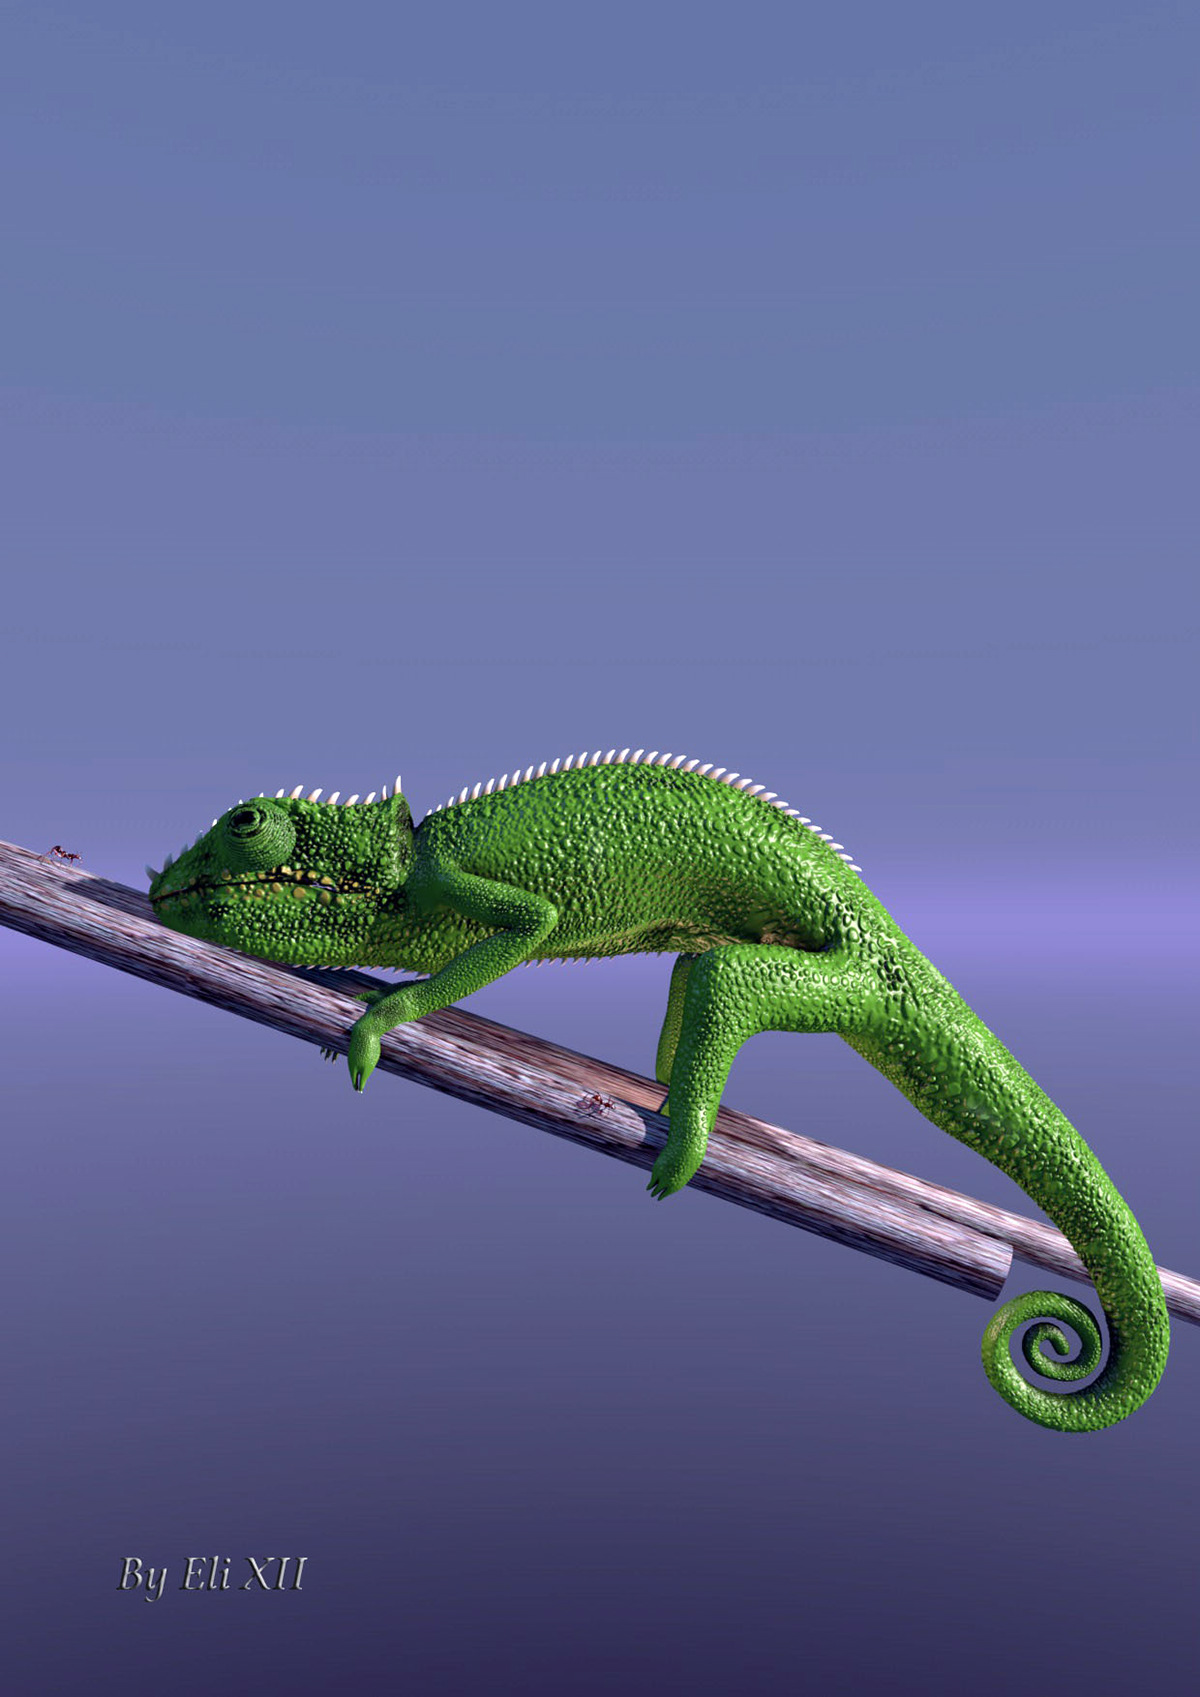 chameleon ant cinema 4d lunch 3D CGI cameleon